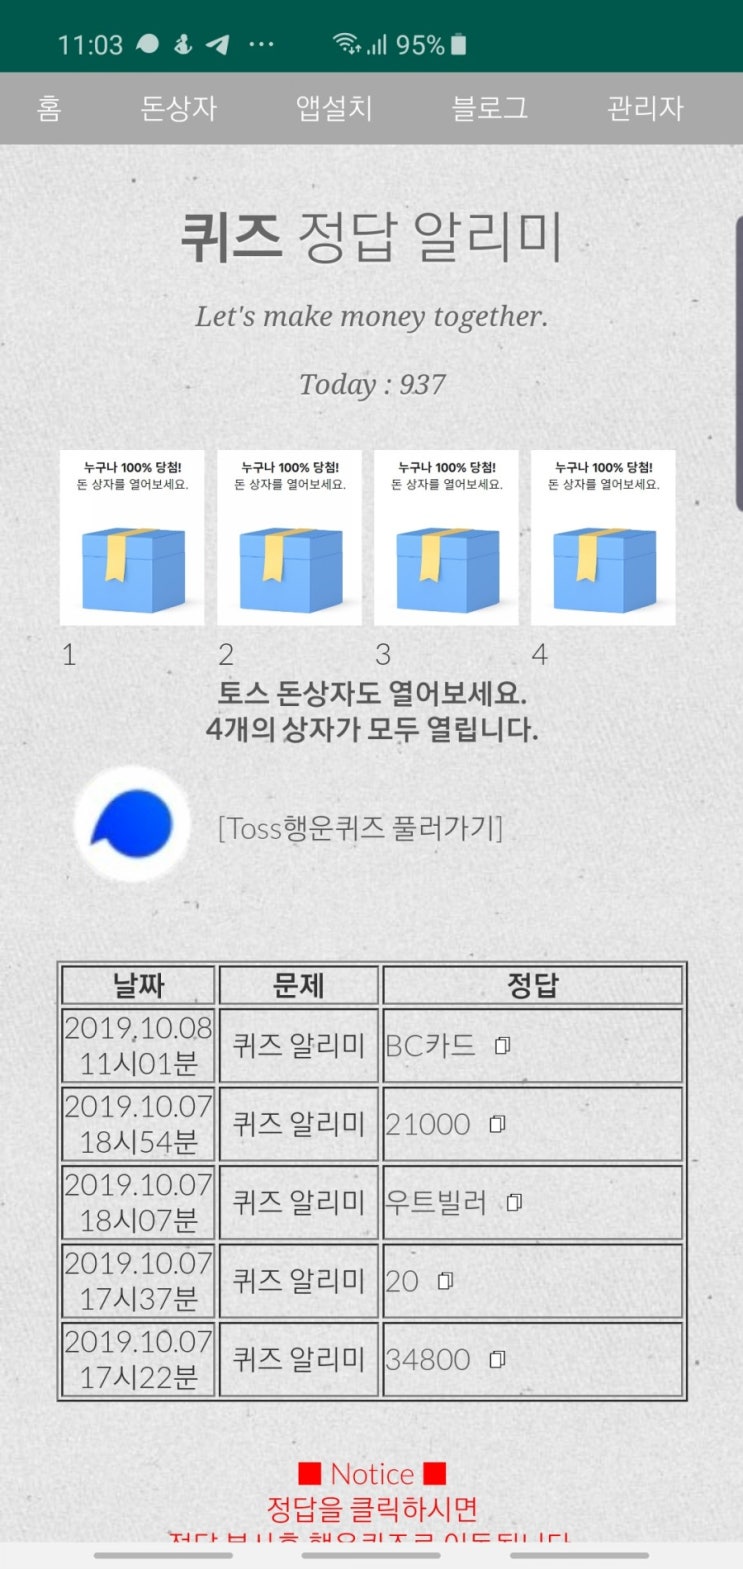 페이북 첫 결제 토스행운퀴즈 정답 공개(실시간)